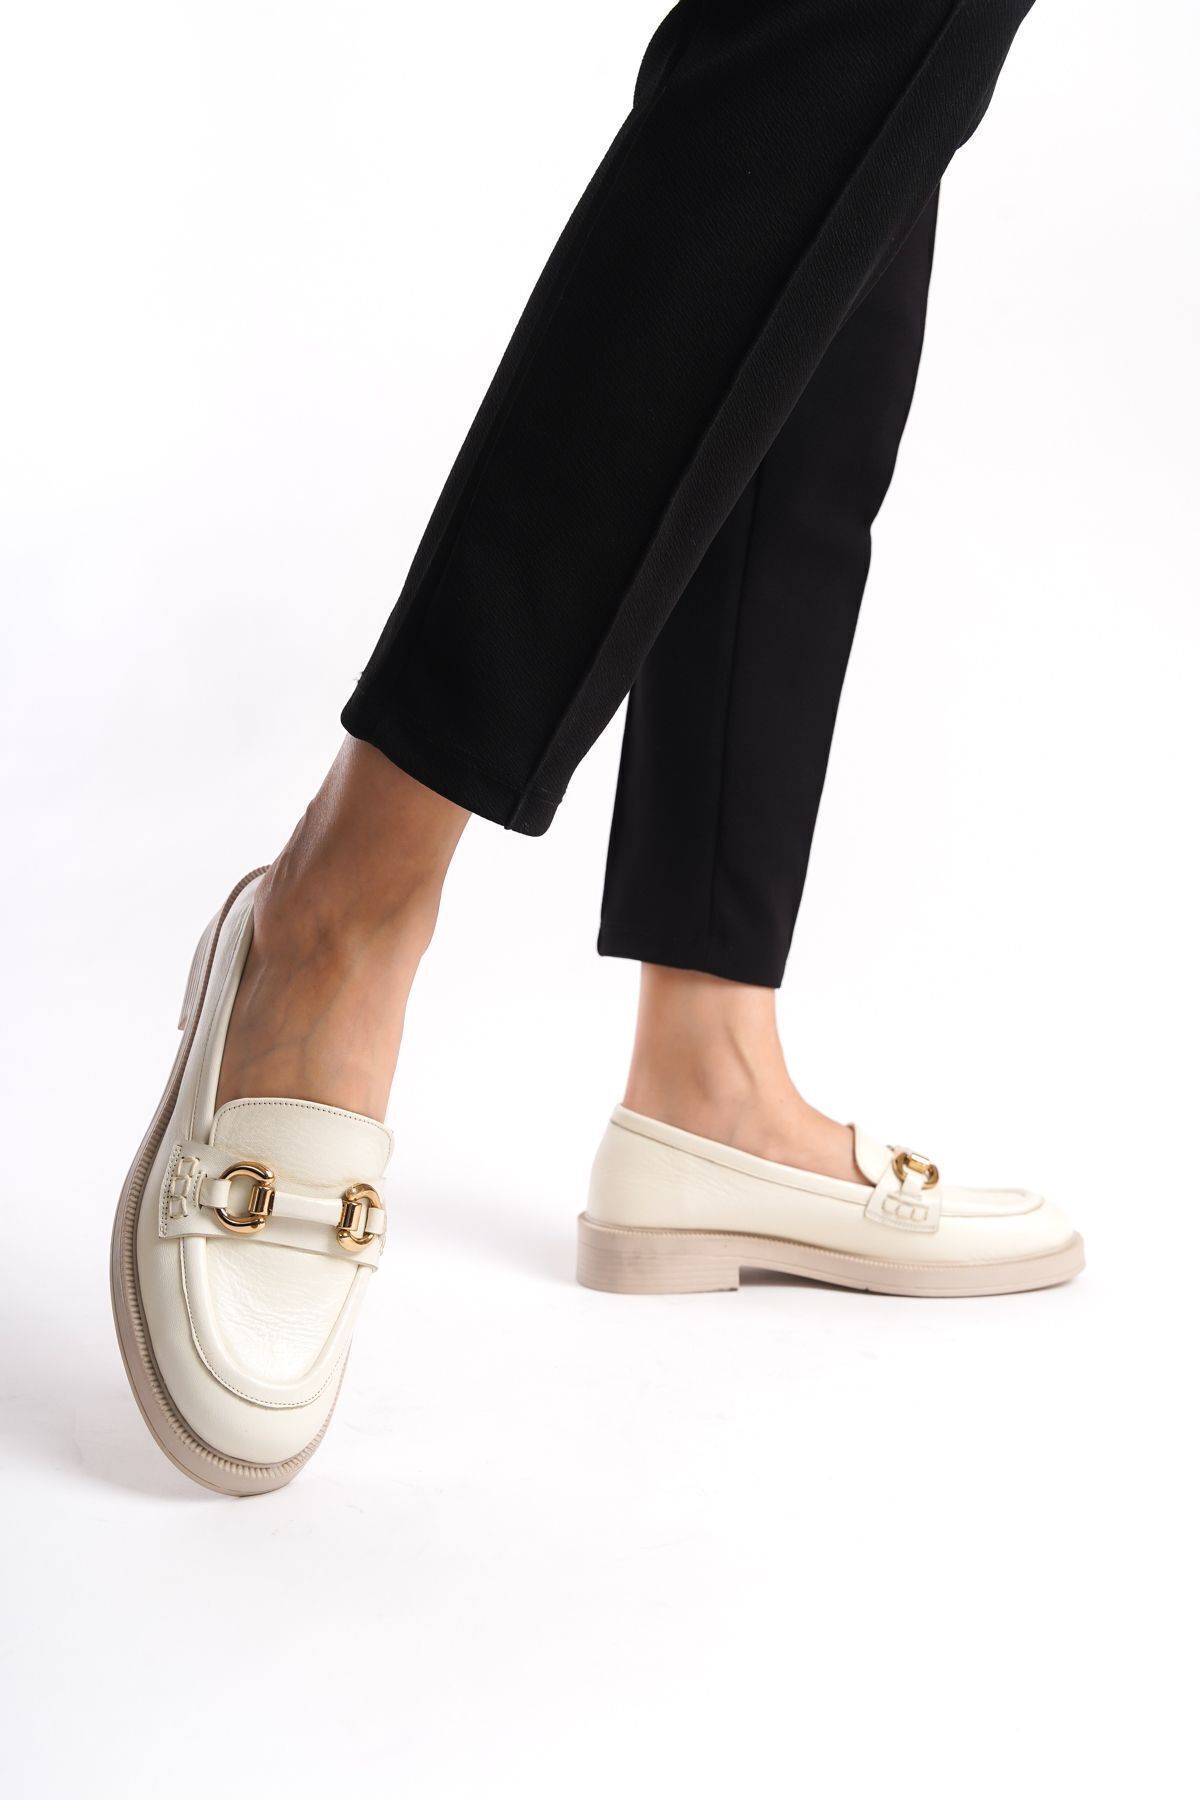 GRADA Bej Loafer Hakiki Deri Kadın Bej Loafer Ayakkabı Bej Rengi Toka Detaylı Kadın Deri Loafer Ayakkabısı